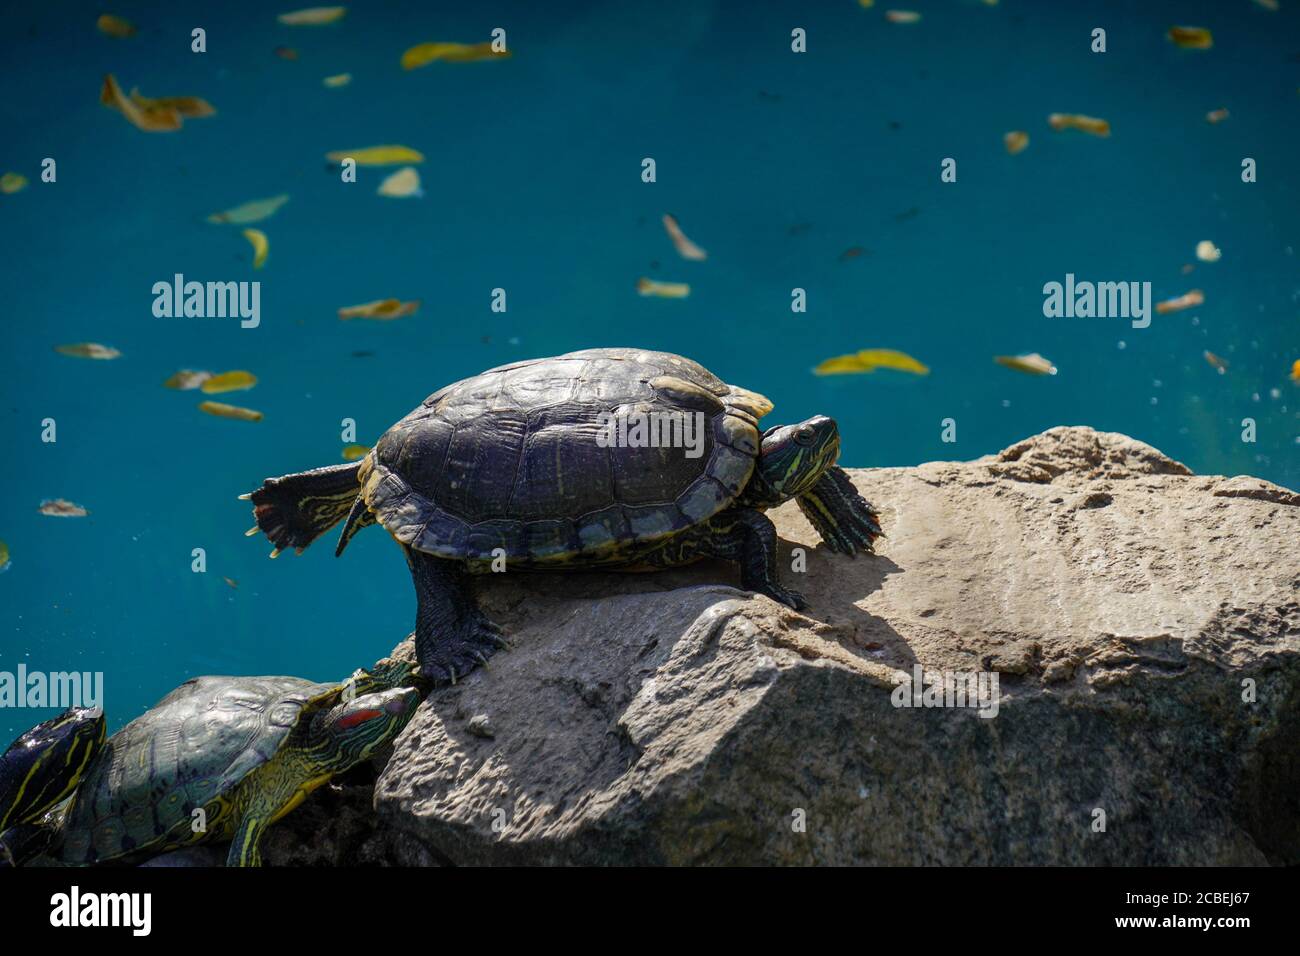 Europäische Teichschildkröte (Emys orbicularis), auch bekannt als Europäische Teichschildkröte. In einem Indoor-Wasserteich Stockfoto